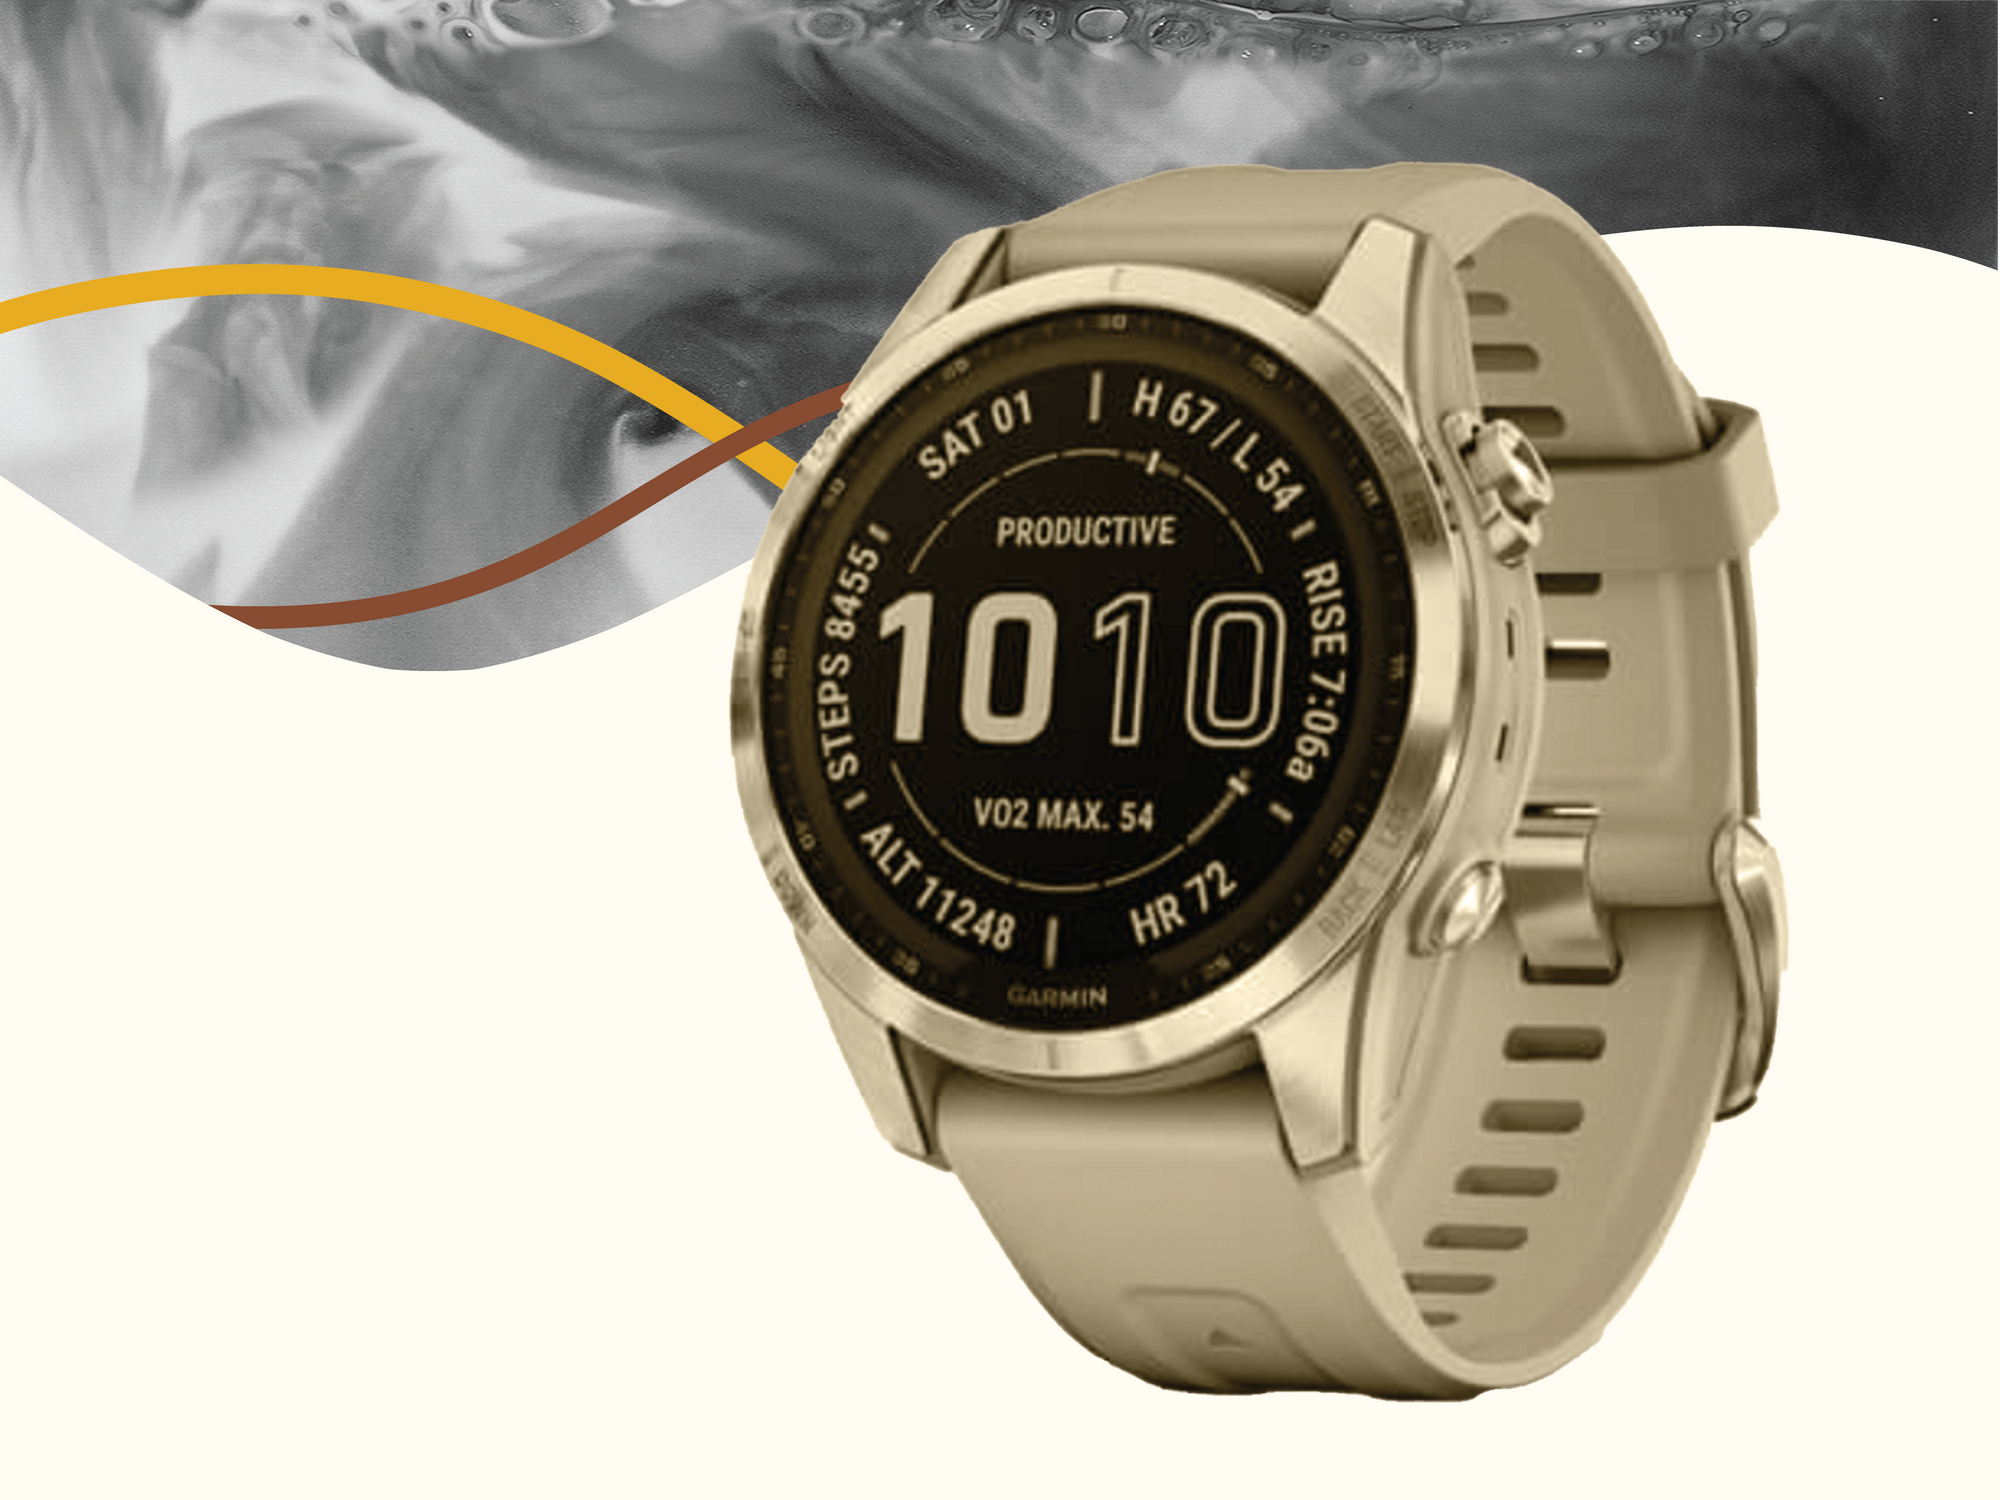 Easy by Design: the Garmin fenix 7 watch